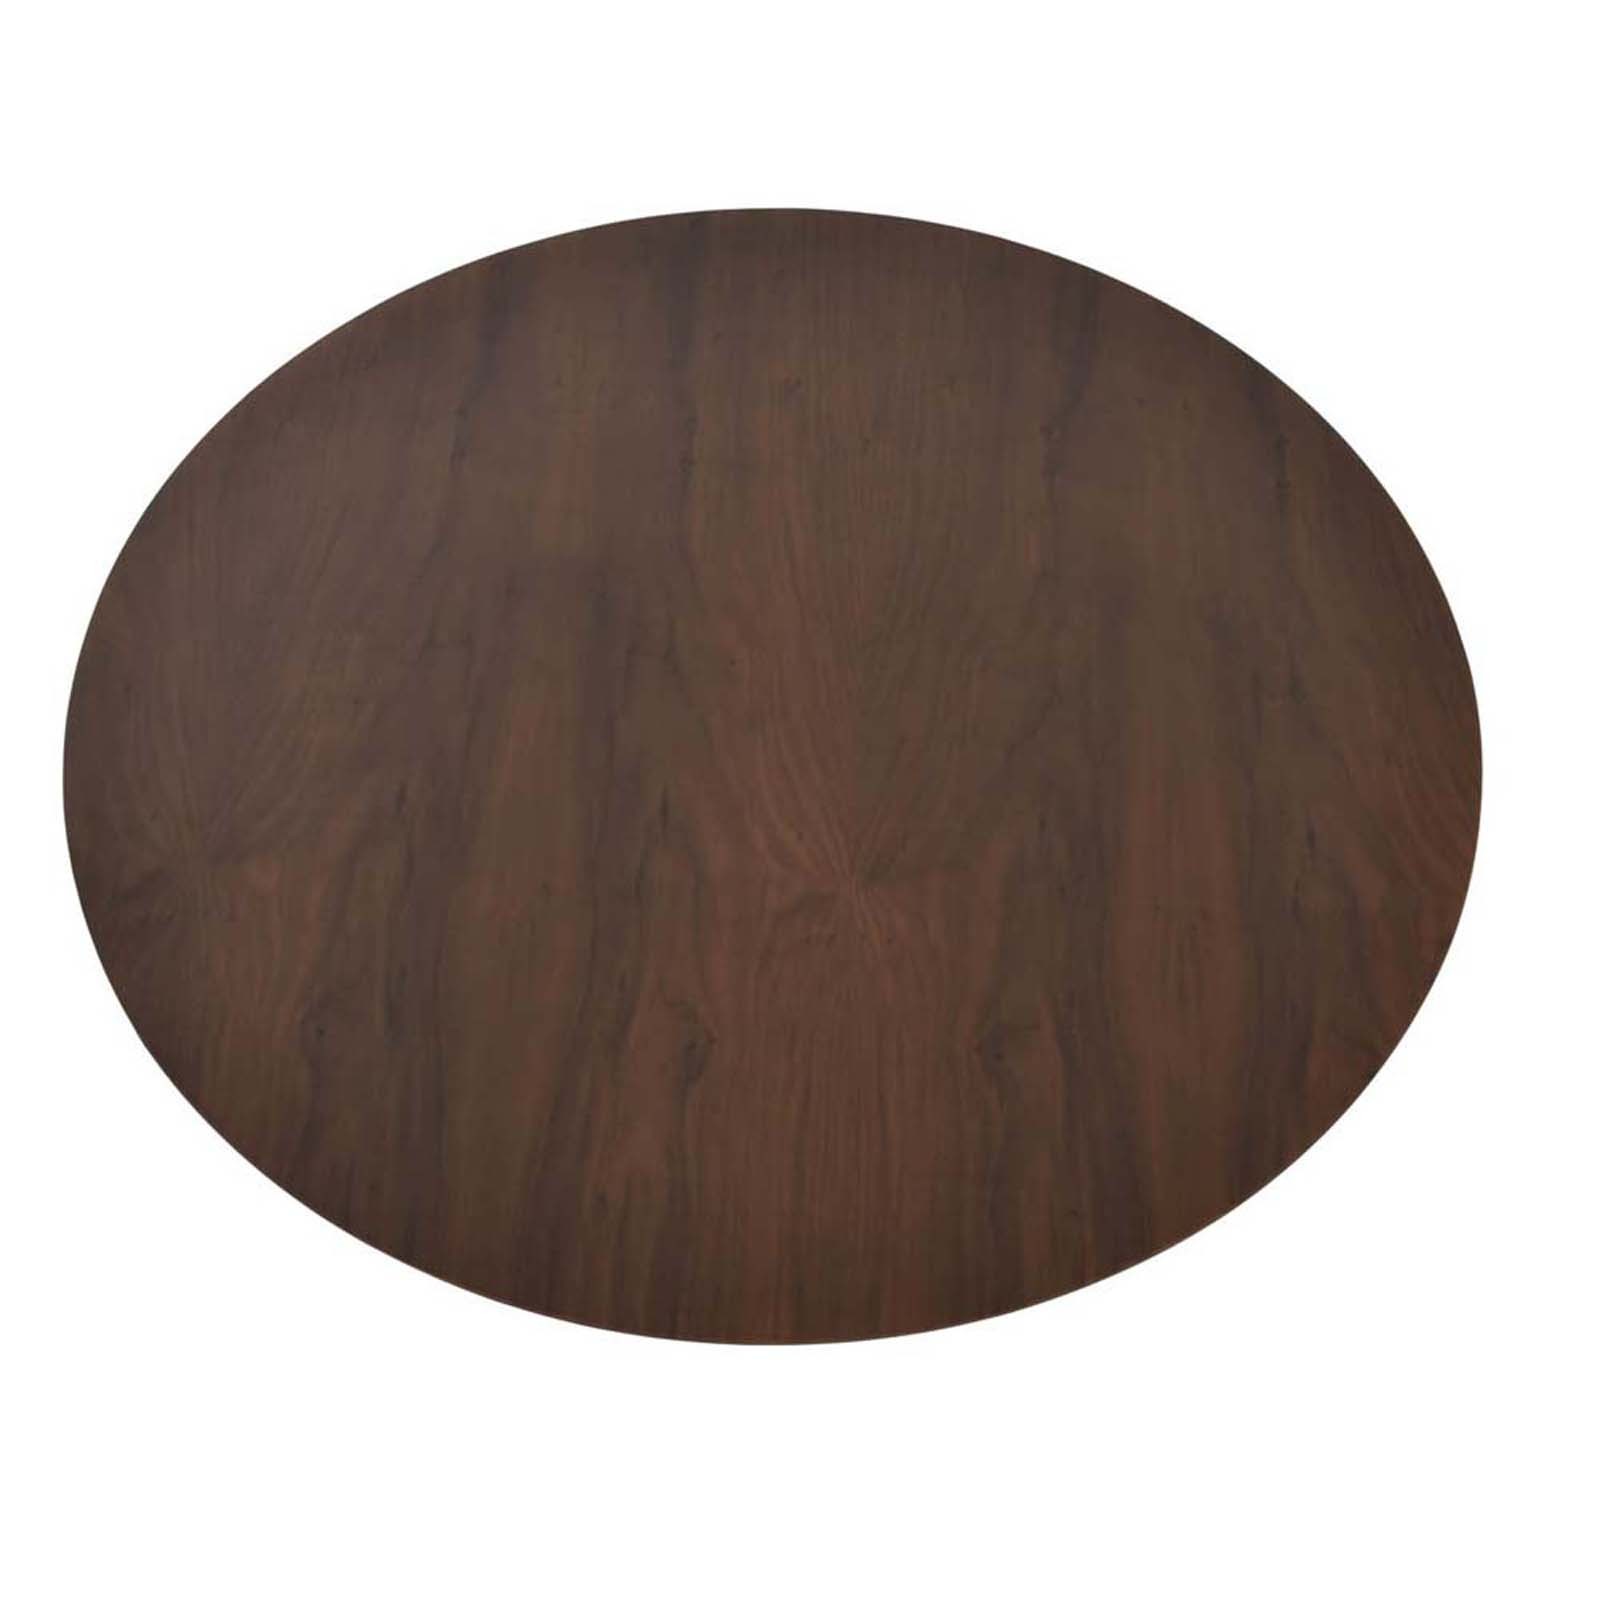 36" Walnut Veneer Finish Wood Plus Round Table Top